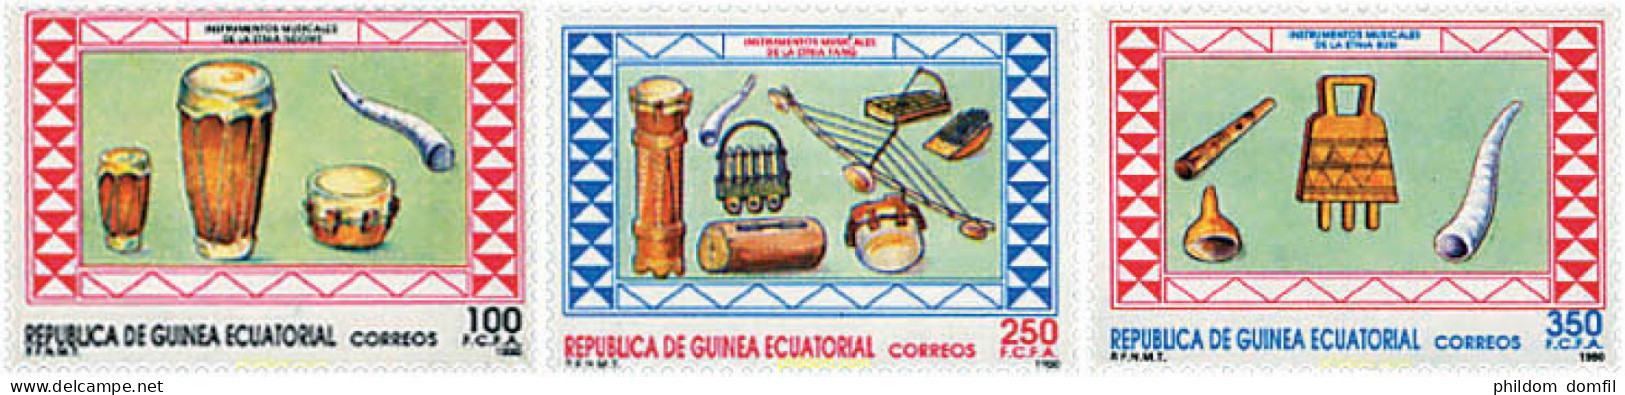 37619 MNH GUINEA ECUATORIAL 1990 INSTRUMENTOS DE MUSICA - Äquatorial-Guinea